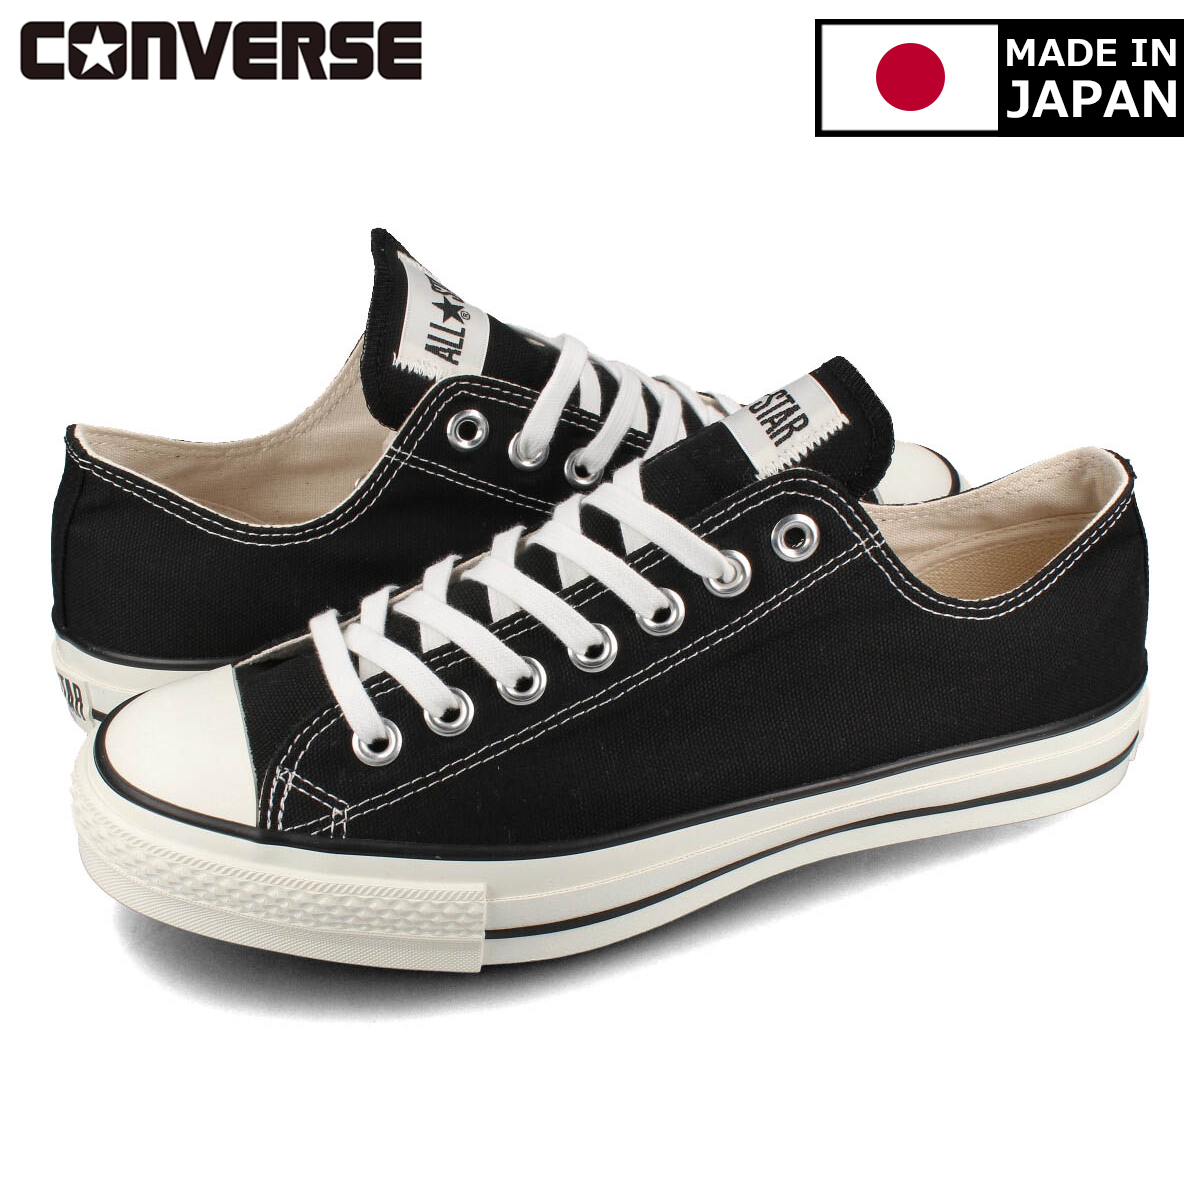 送料無料 CONVERSE コンバース メンズ 靴 スニーカー MADE IN JAPAN 爆安 メイド イン 32167431 ALL オールスター 日本製 ジャパン BLACK OX CANVAS 『4年保証』 J STAR